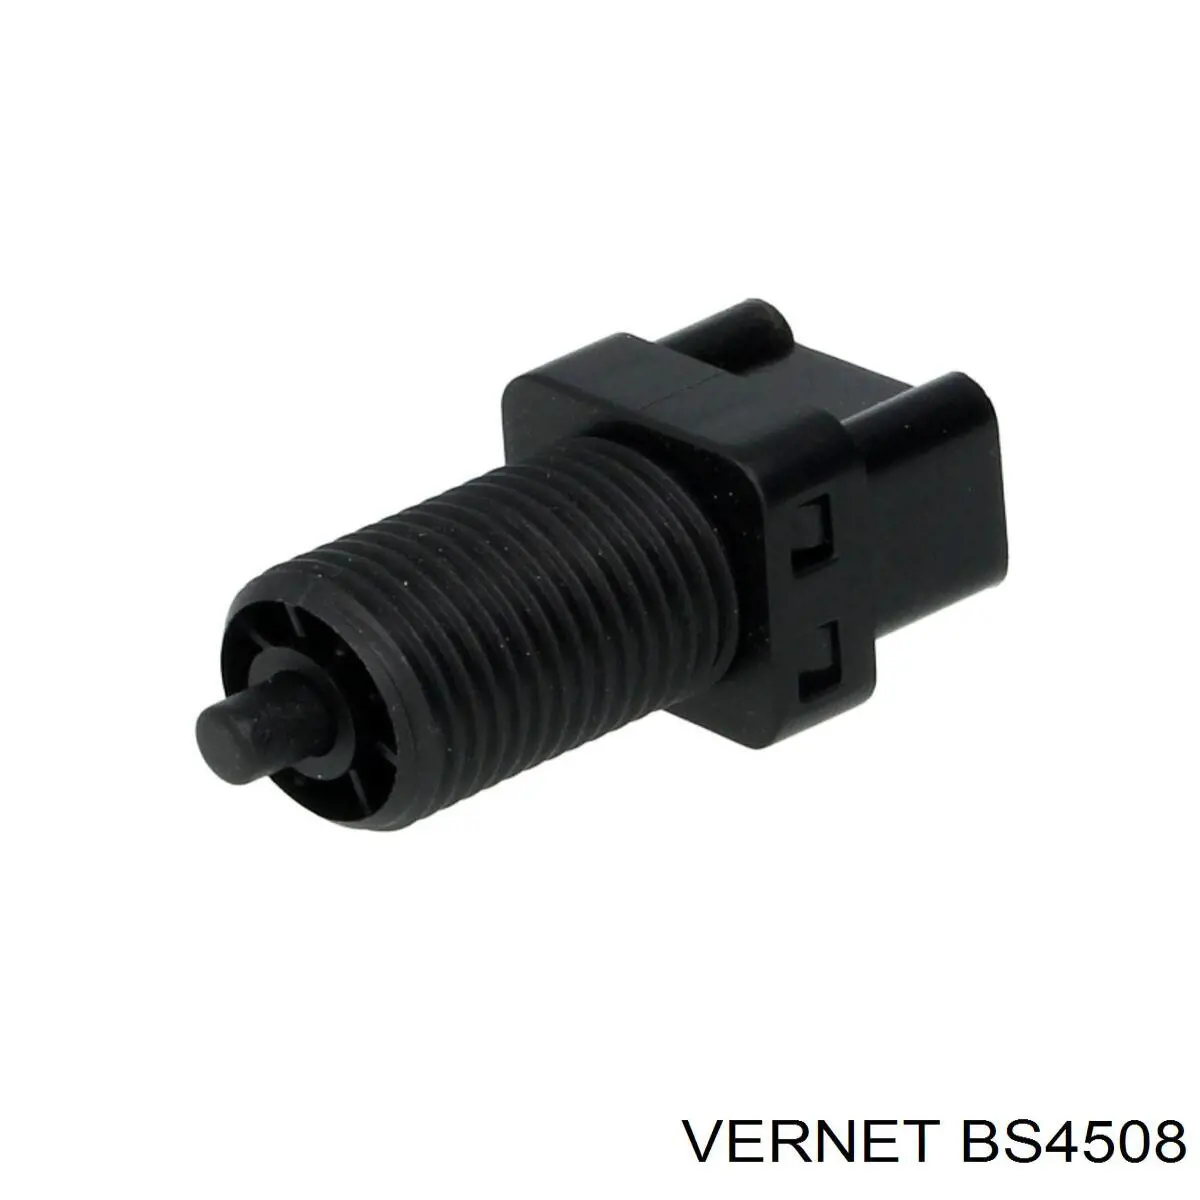 BS4508 Vernet interruptor luz de freno